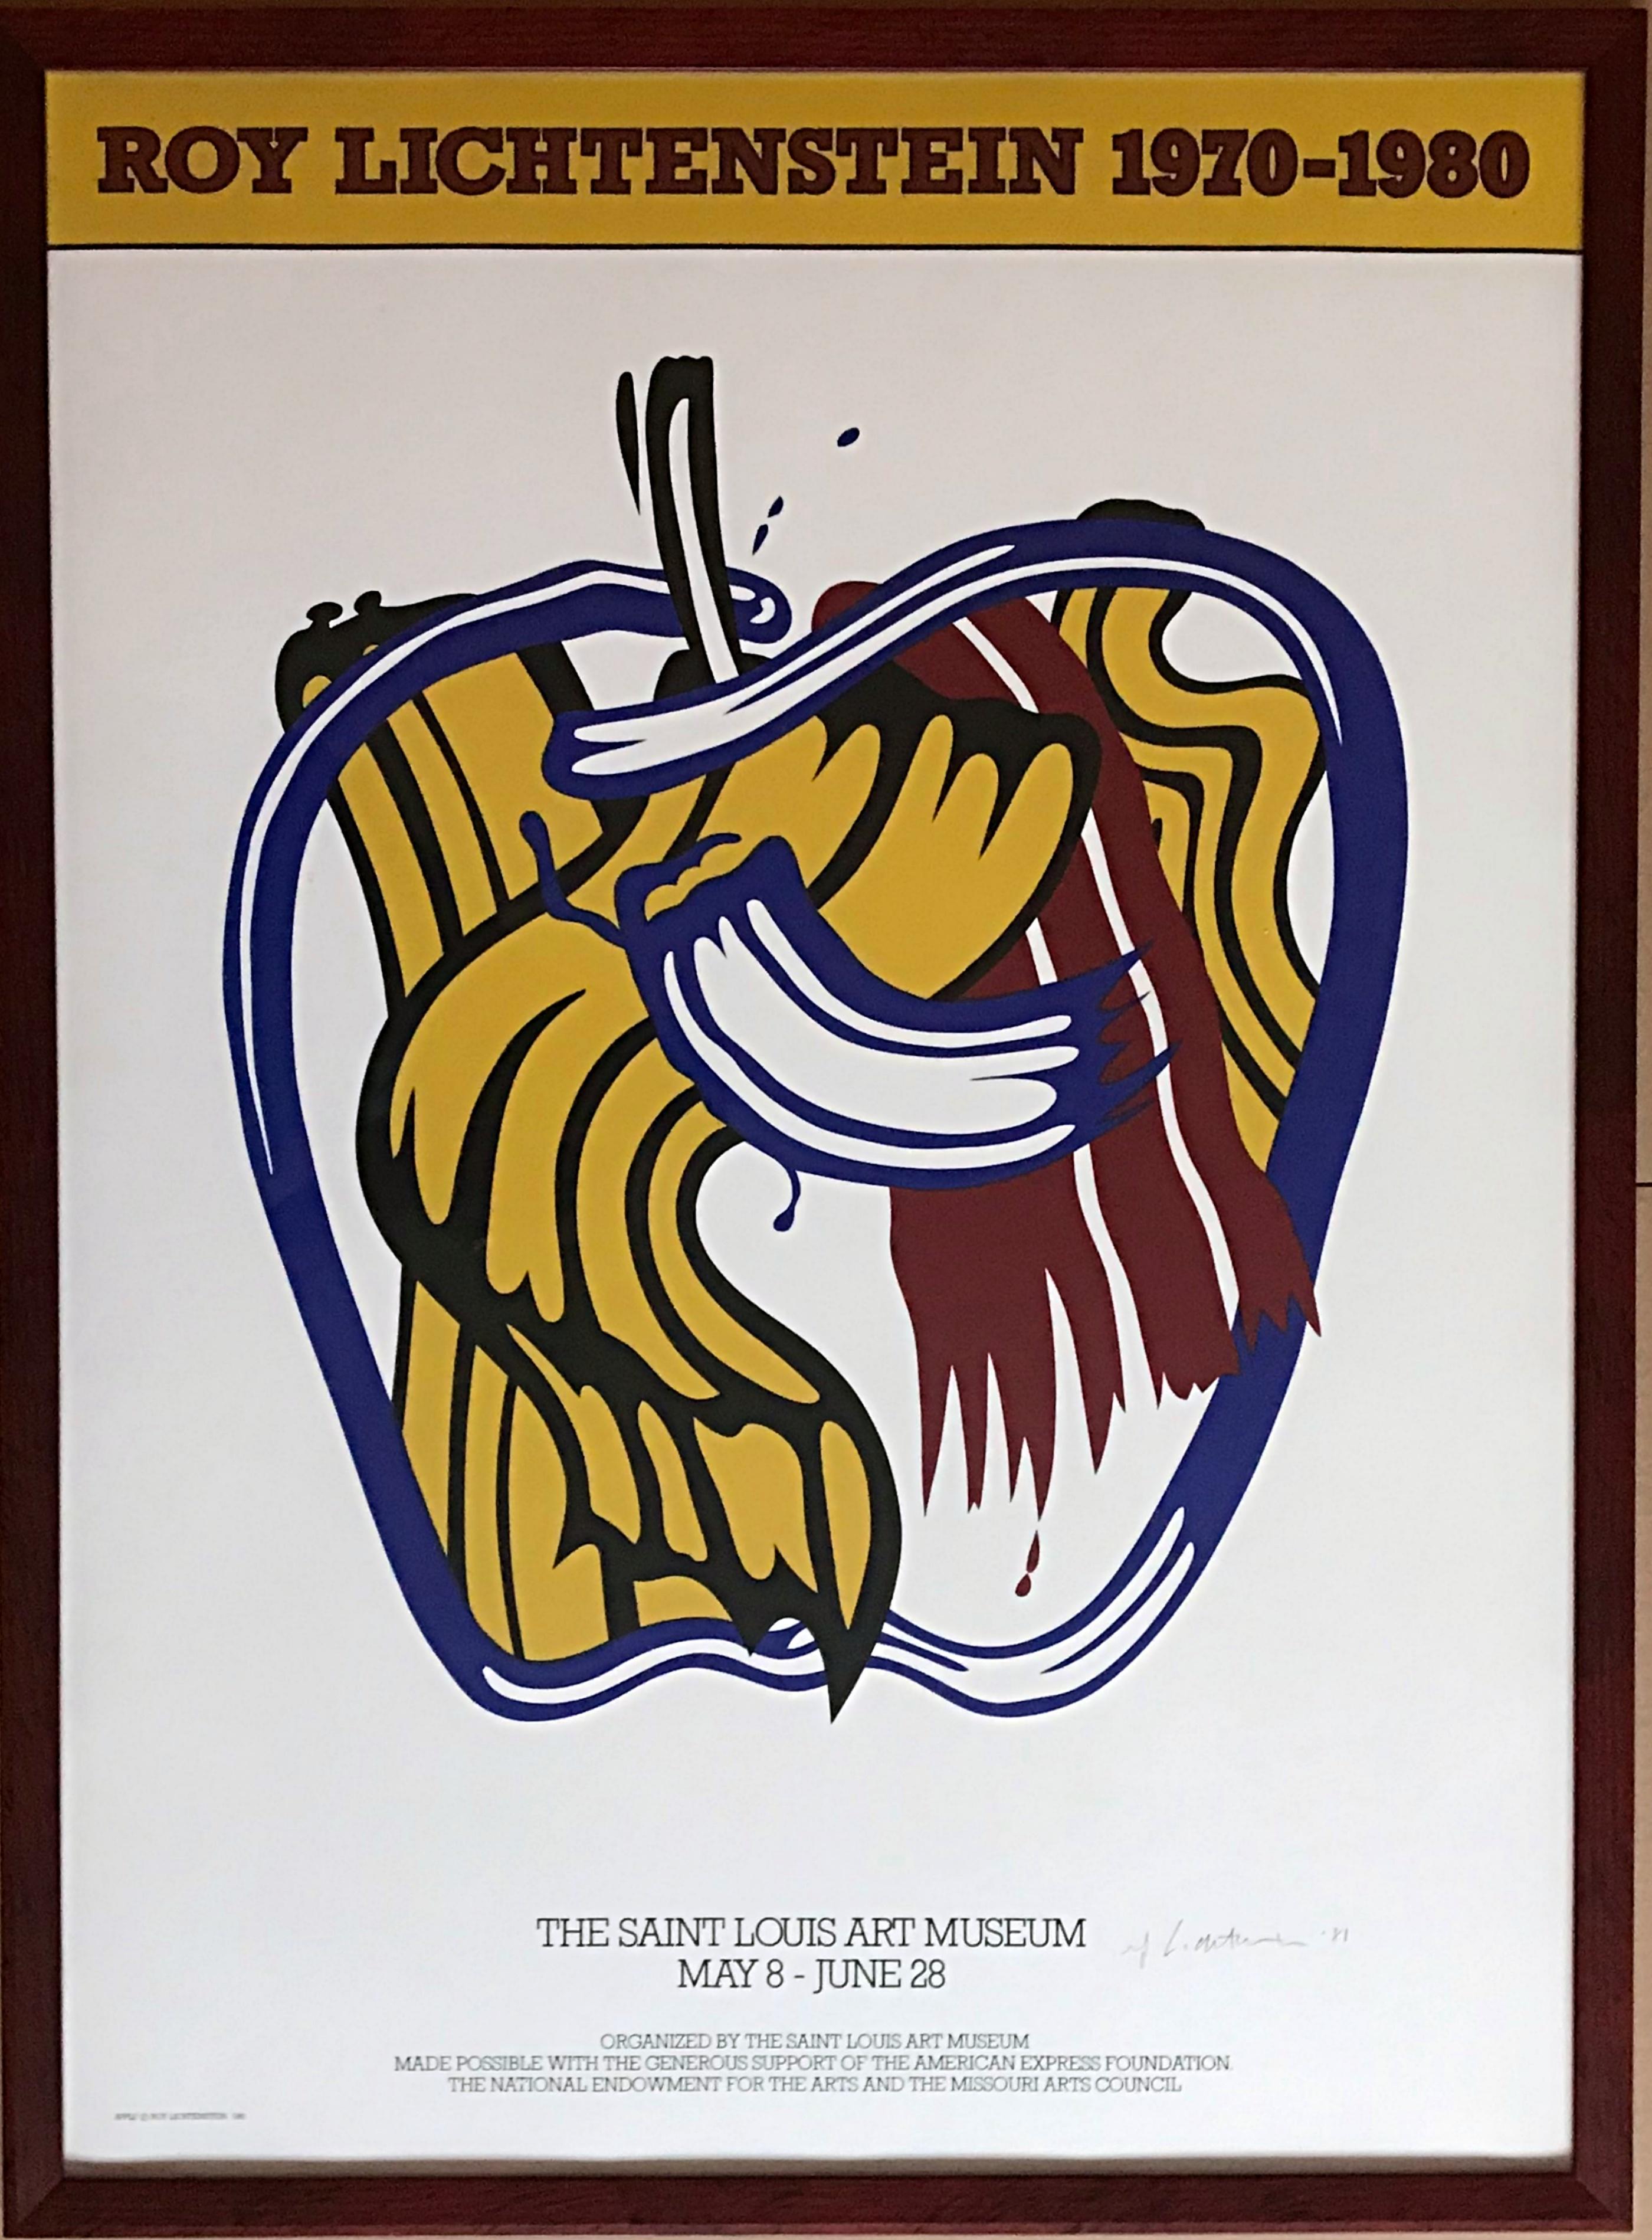 Roy Lichtenstein 1970-1980 (signé à la main et daté par Roy Lichtenstein), 1981
Lithographie offset. Signé et daté à l'encre
Signé à la main par l'artiste, signé et daté à l'encre au recto.
Un des 100 exemplaires signés par l'artiste en 1981 pour le